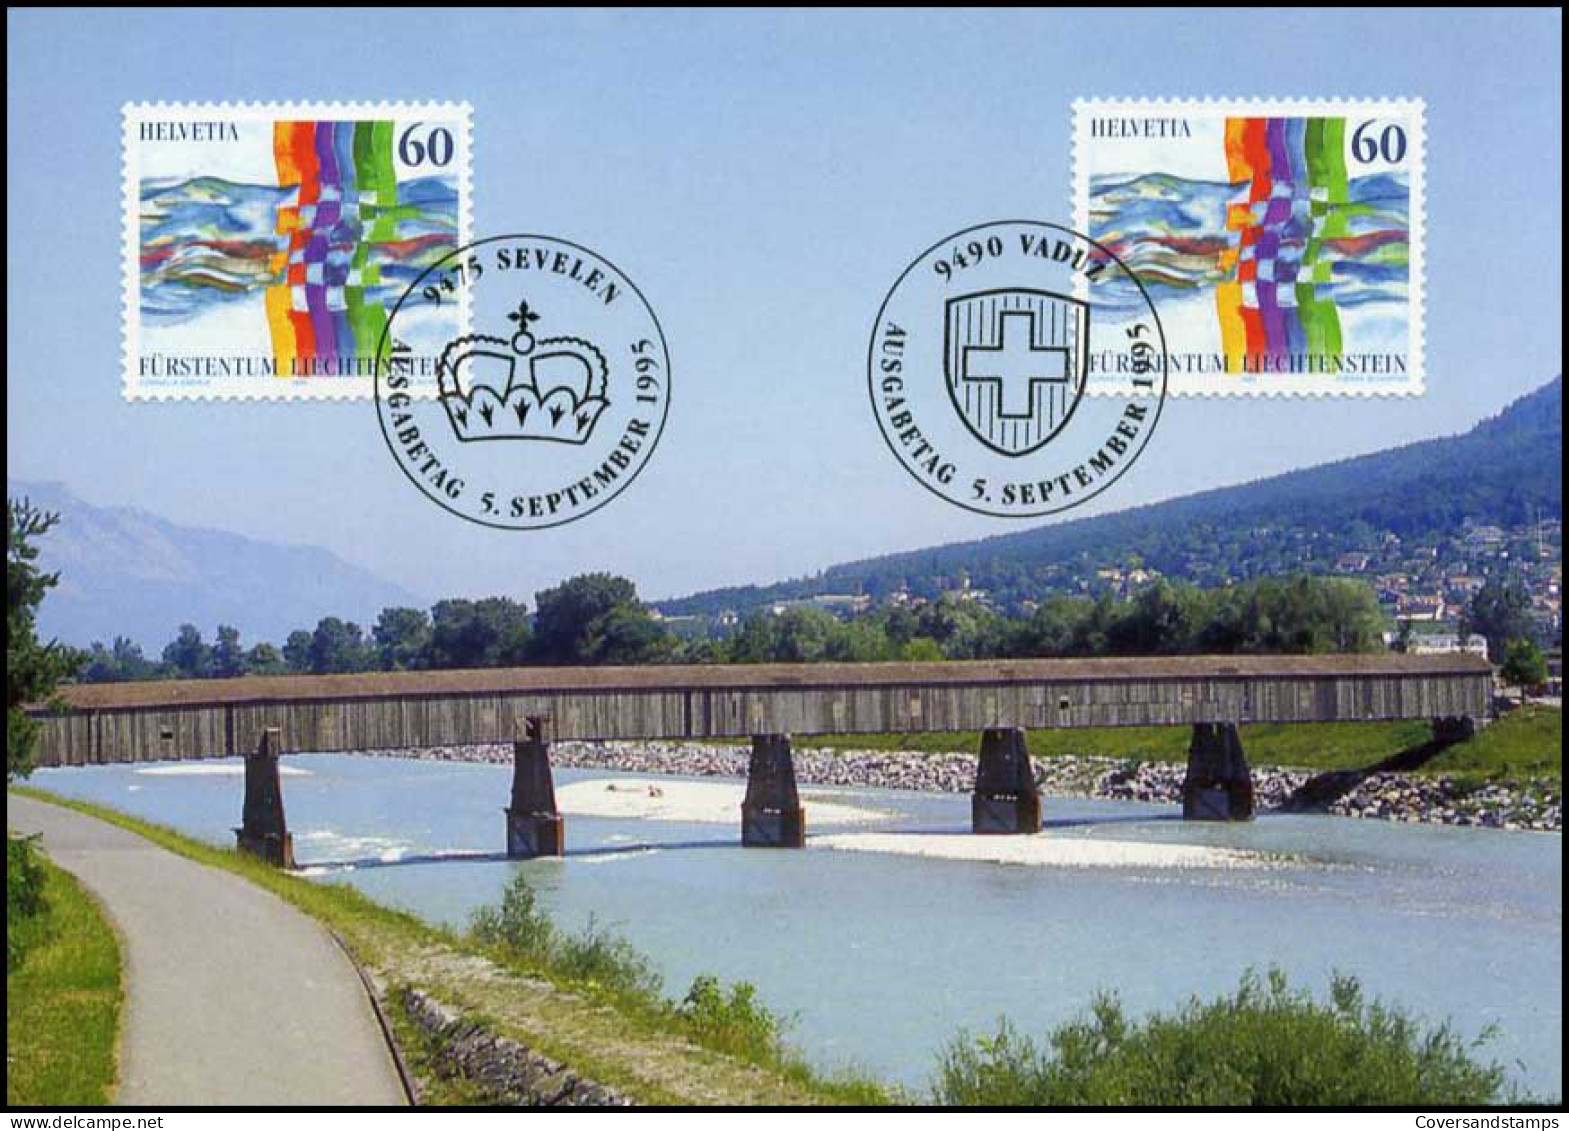  Liechtenstein - MK -  Gemeinschaftsmarke Schweiz - Liechtenstein - Maximumkaarten